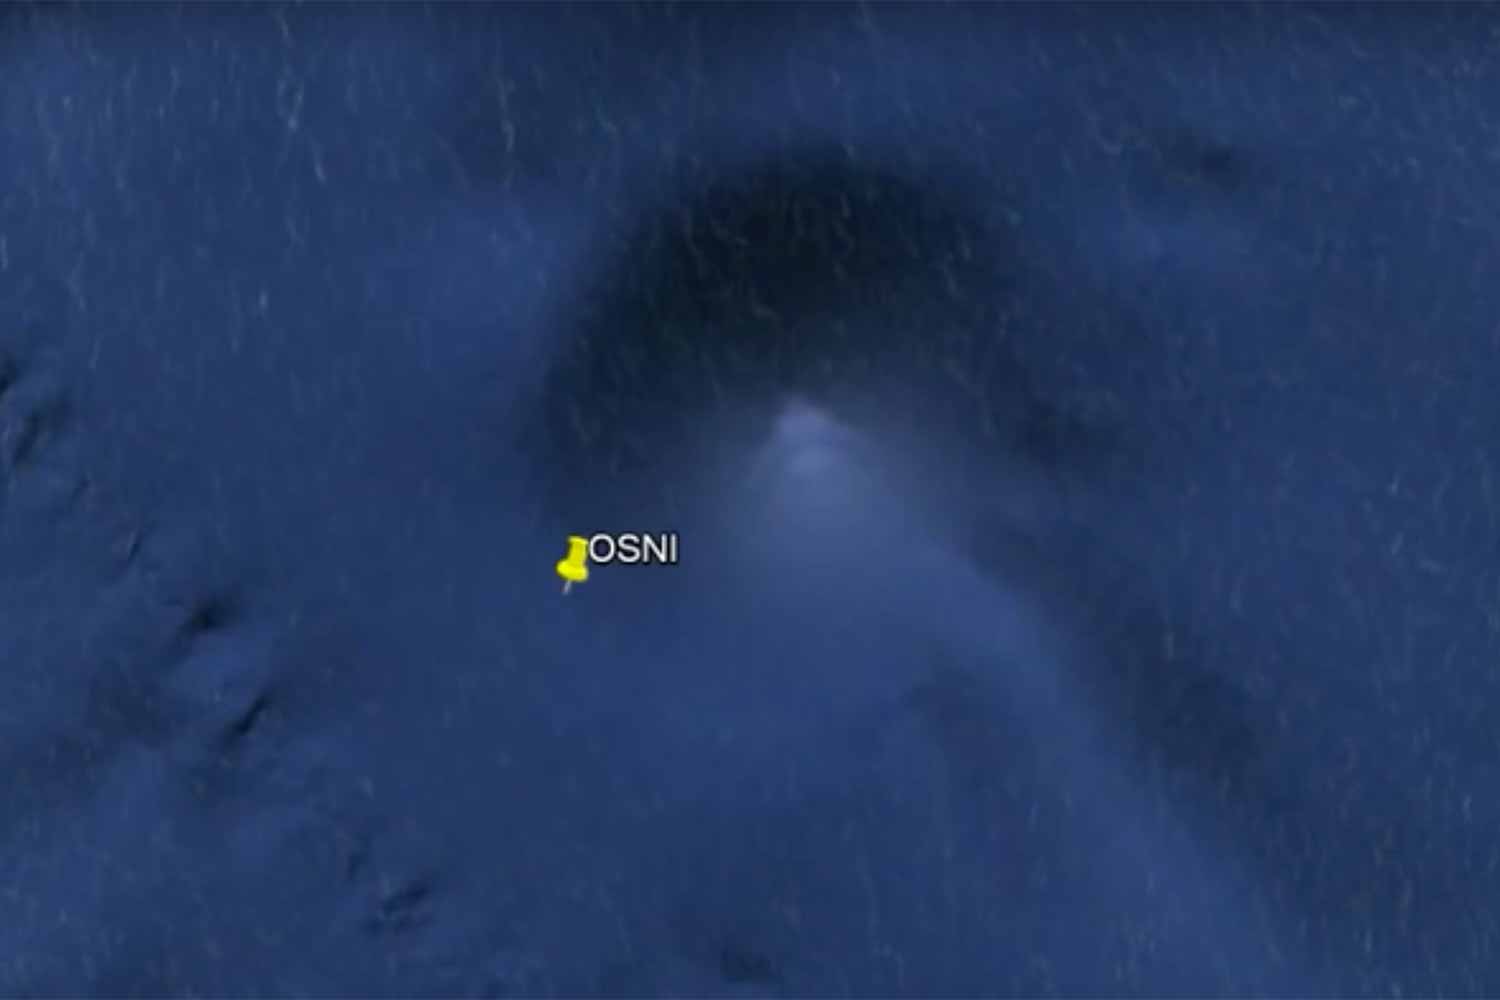 Descubren una pirámide perfecta en las profundidades del Pacífico gracias a Google Earth